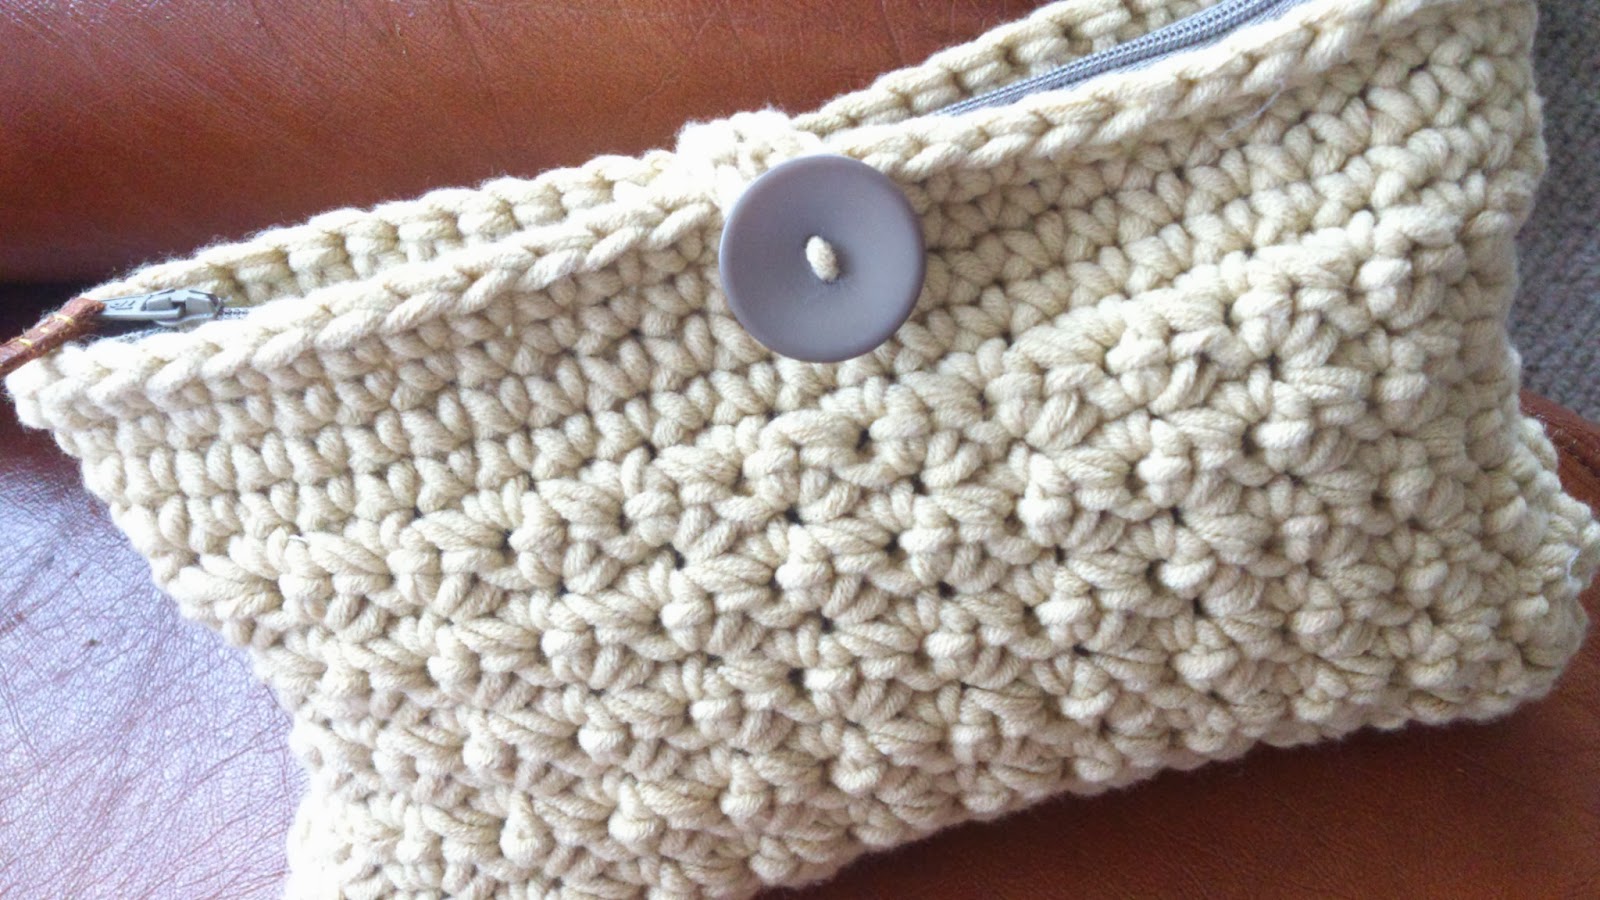 Crochet Clutch Bag Free Pattern - Purse Clutch Crochet 1hdc Ch Pattern ...